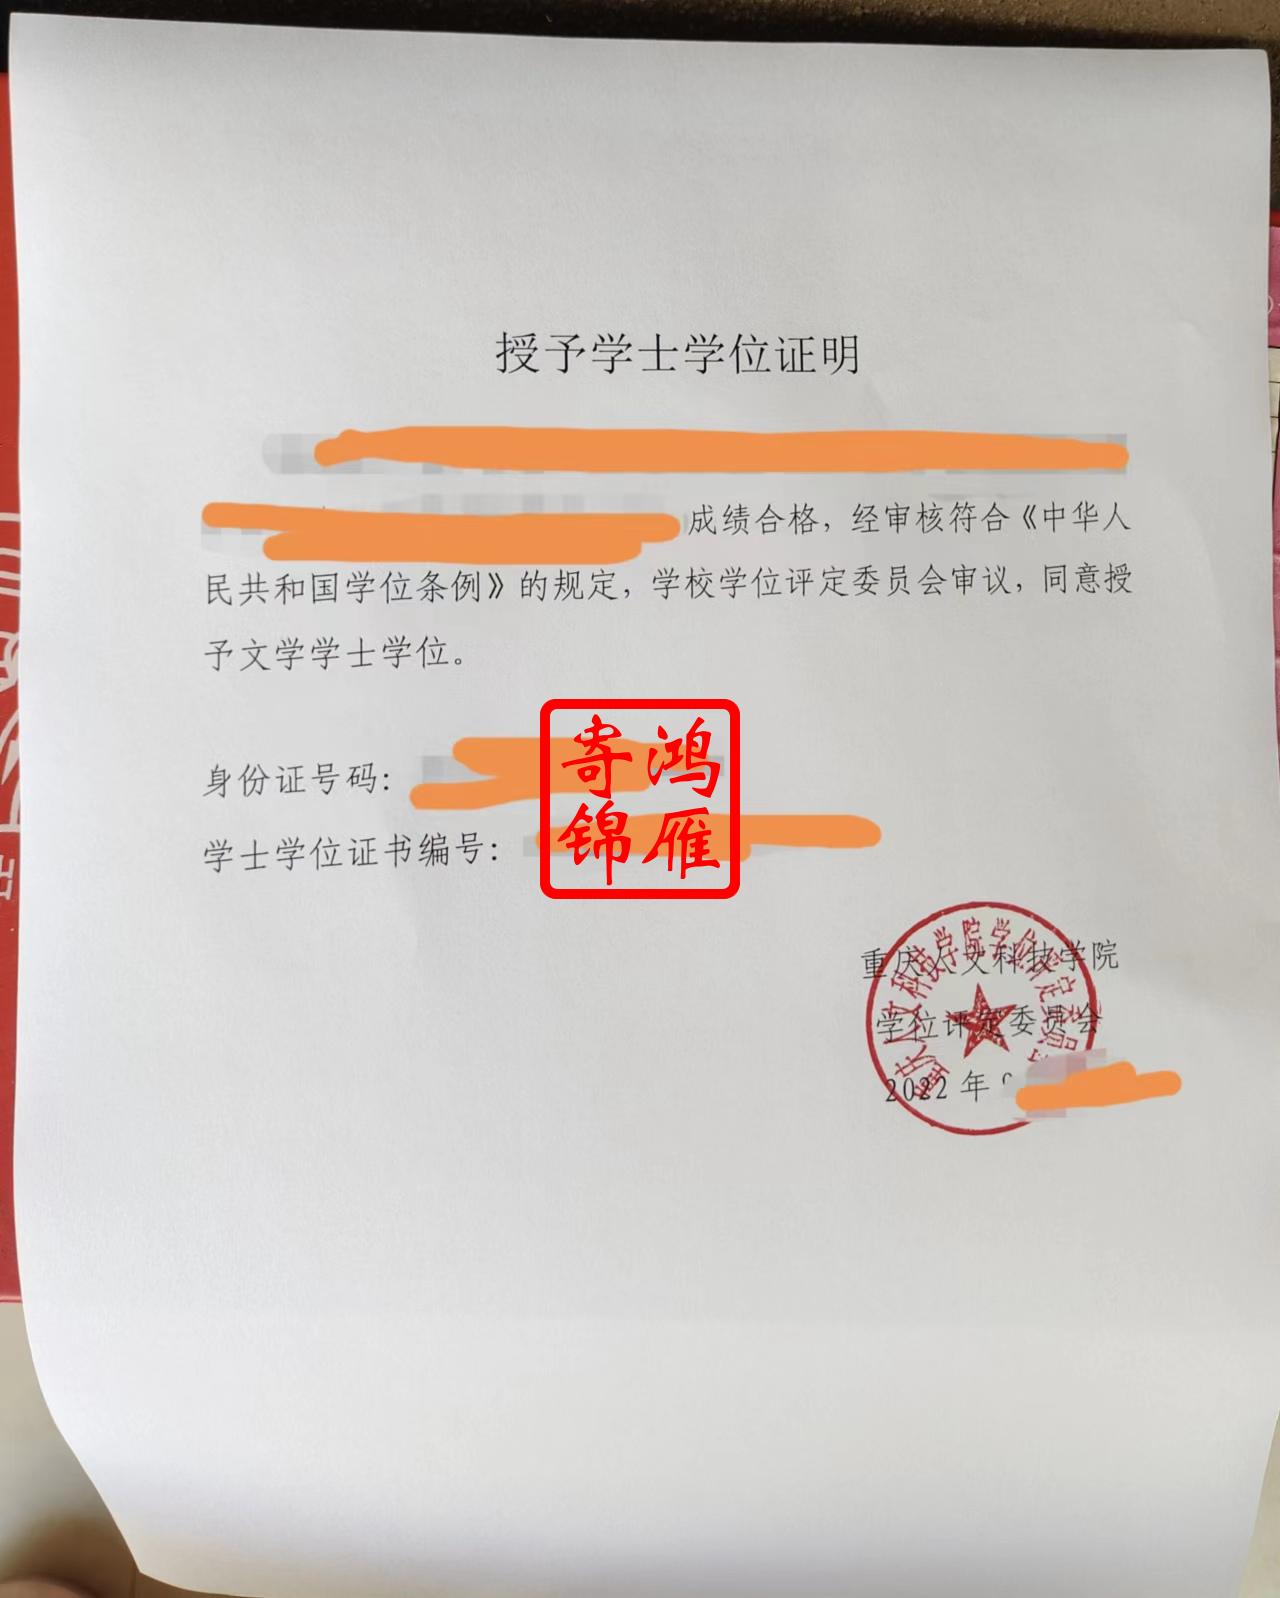 重庆人文科技学院授予学士学位证明打印案例.jpg